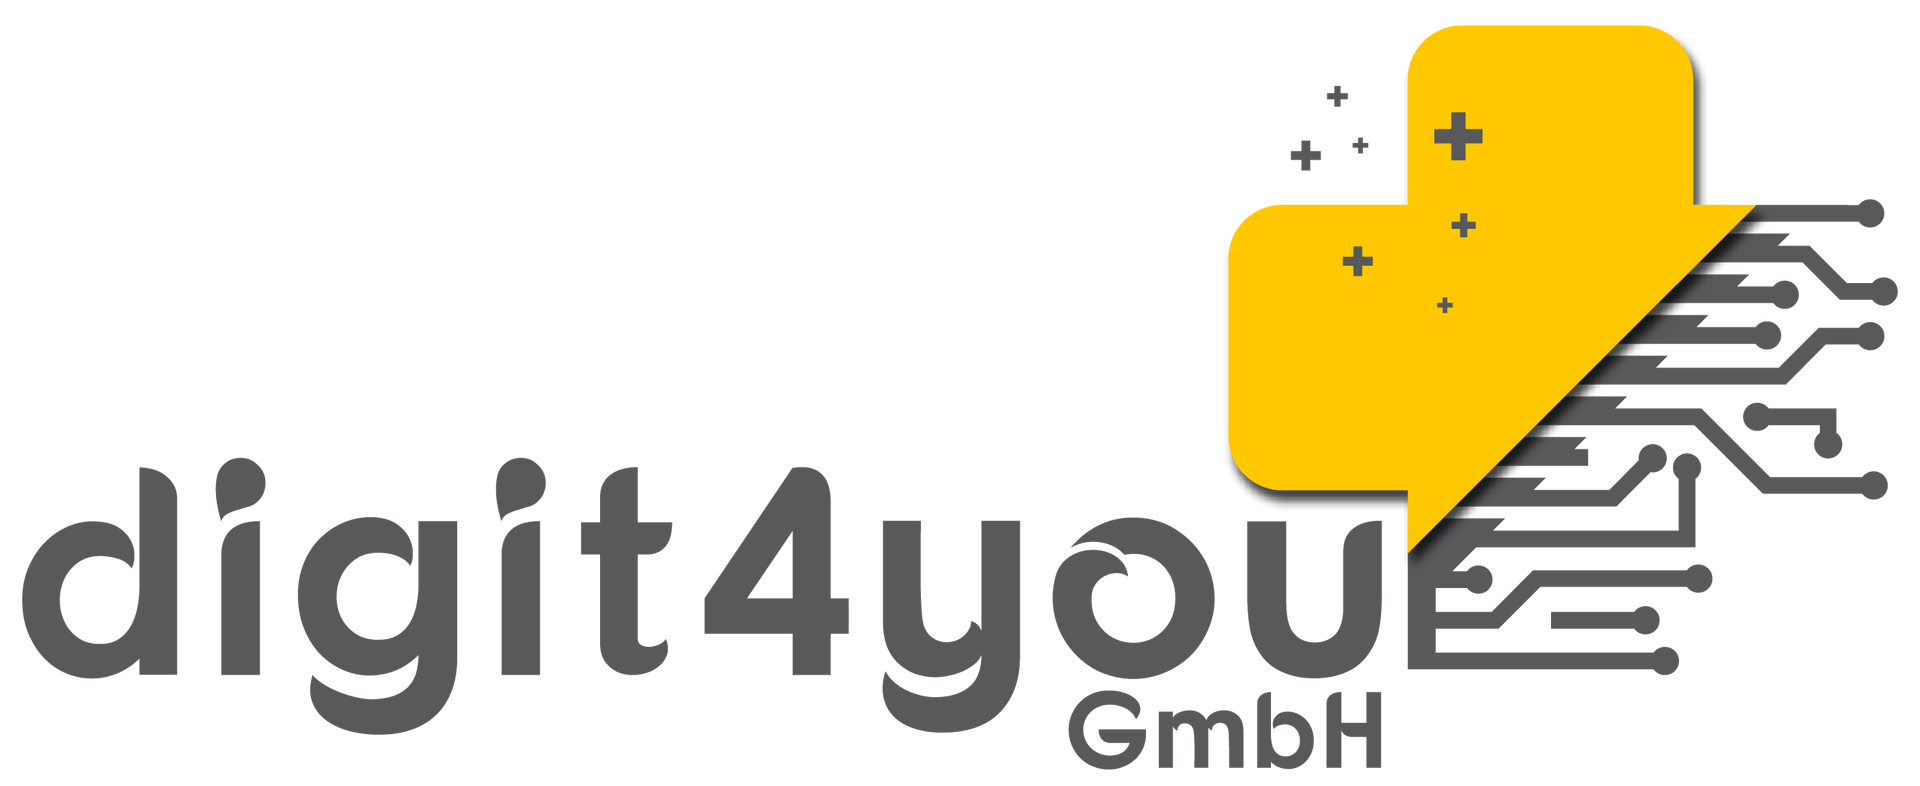 Ein Logo für ein Unternehmen namens digit4you gmbh
